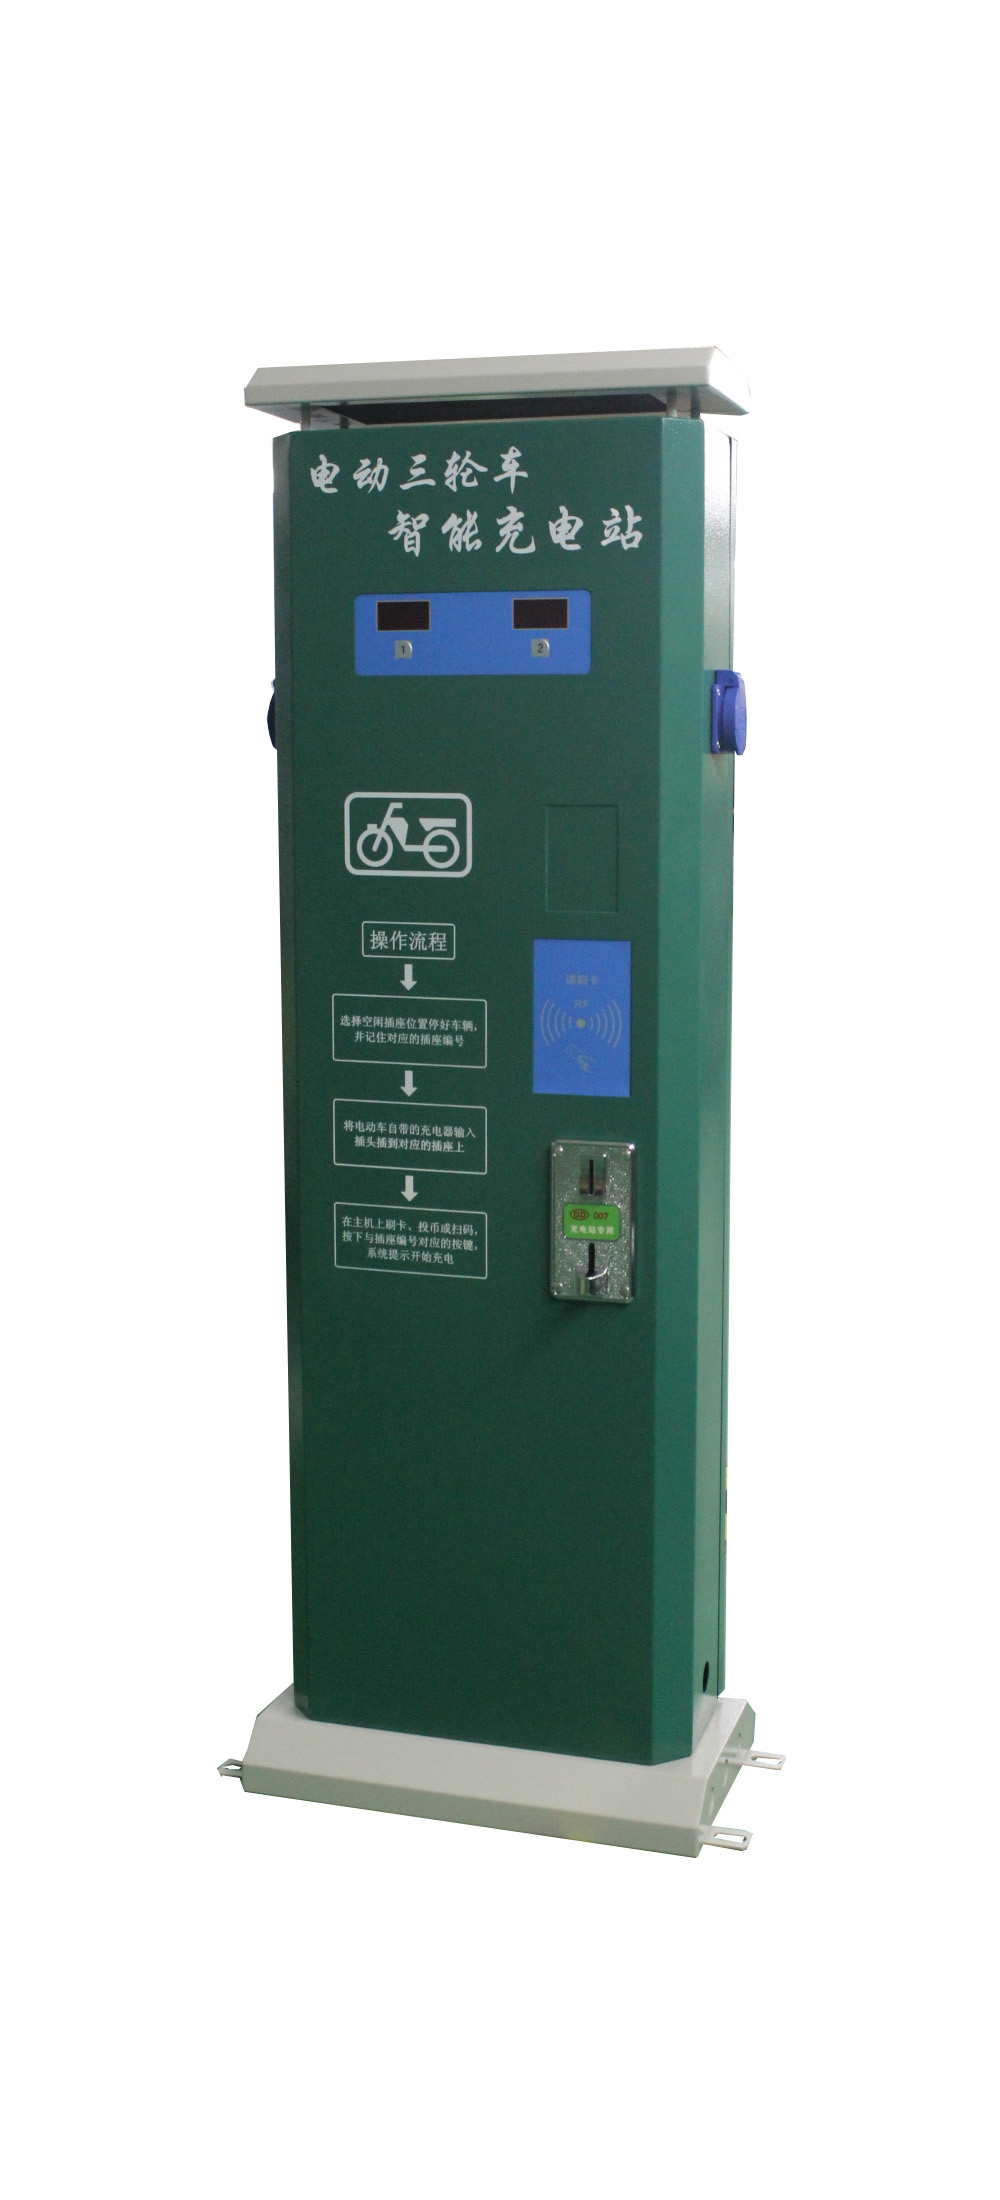 贵州遵义刷卡式电动车充电桩方便管理安全充电